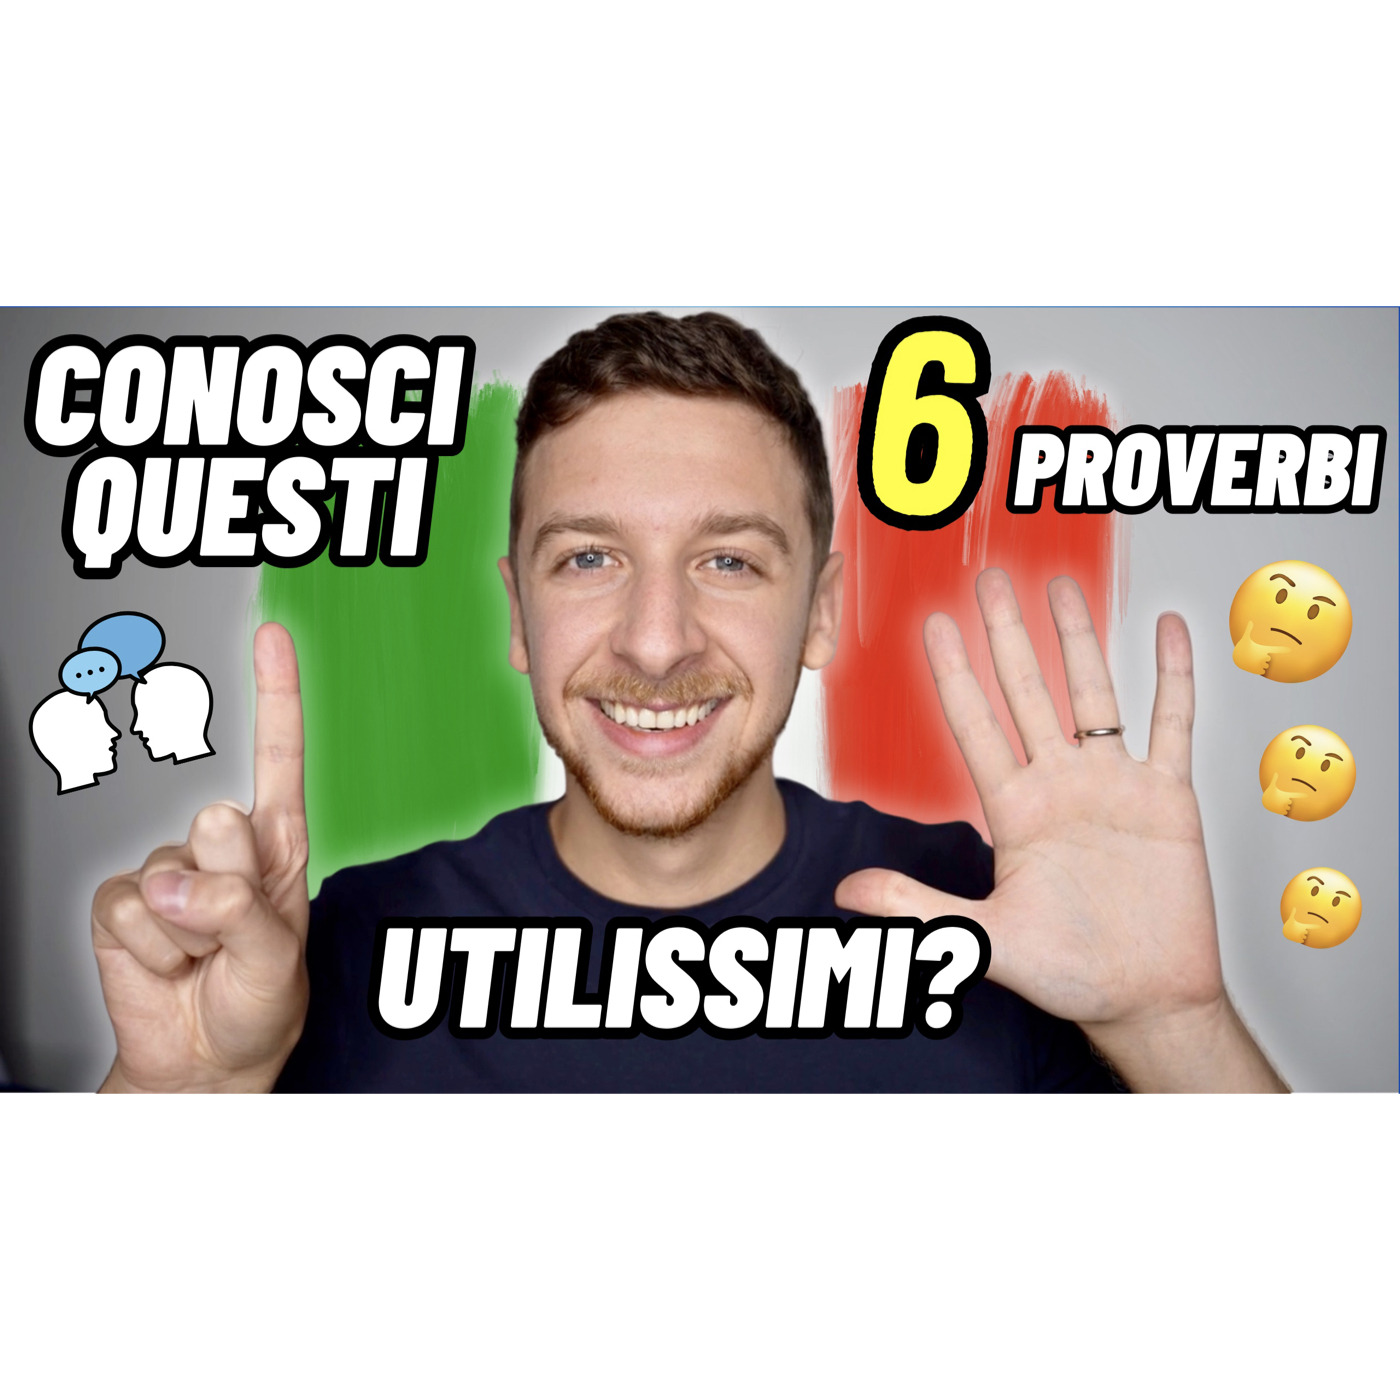 Episode 600: 6 Proverbi Italiani Sulle Feste Natalizie | Imparare l’Italiano